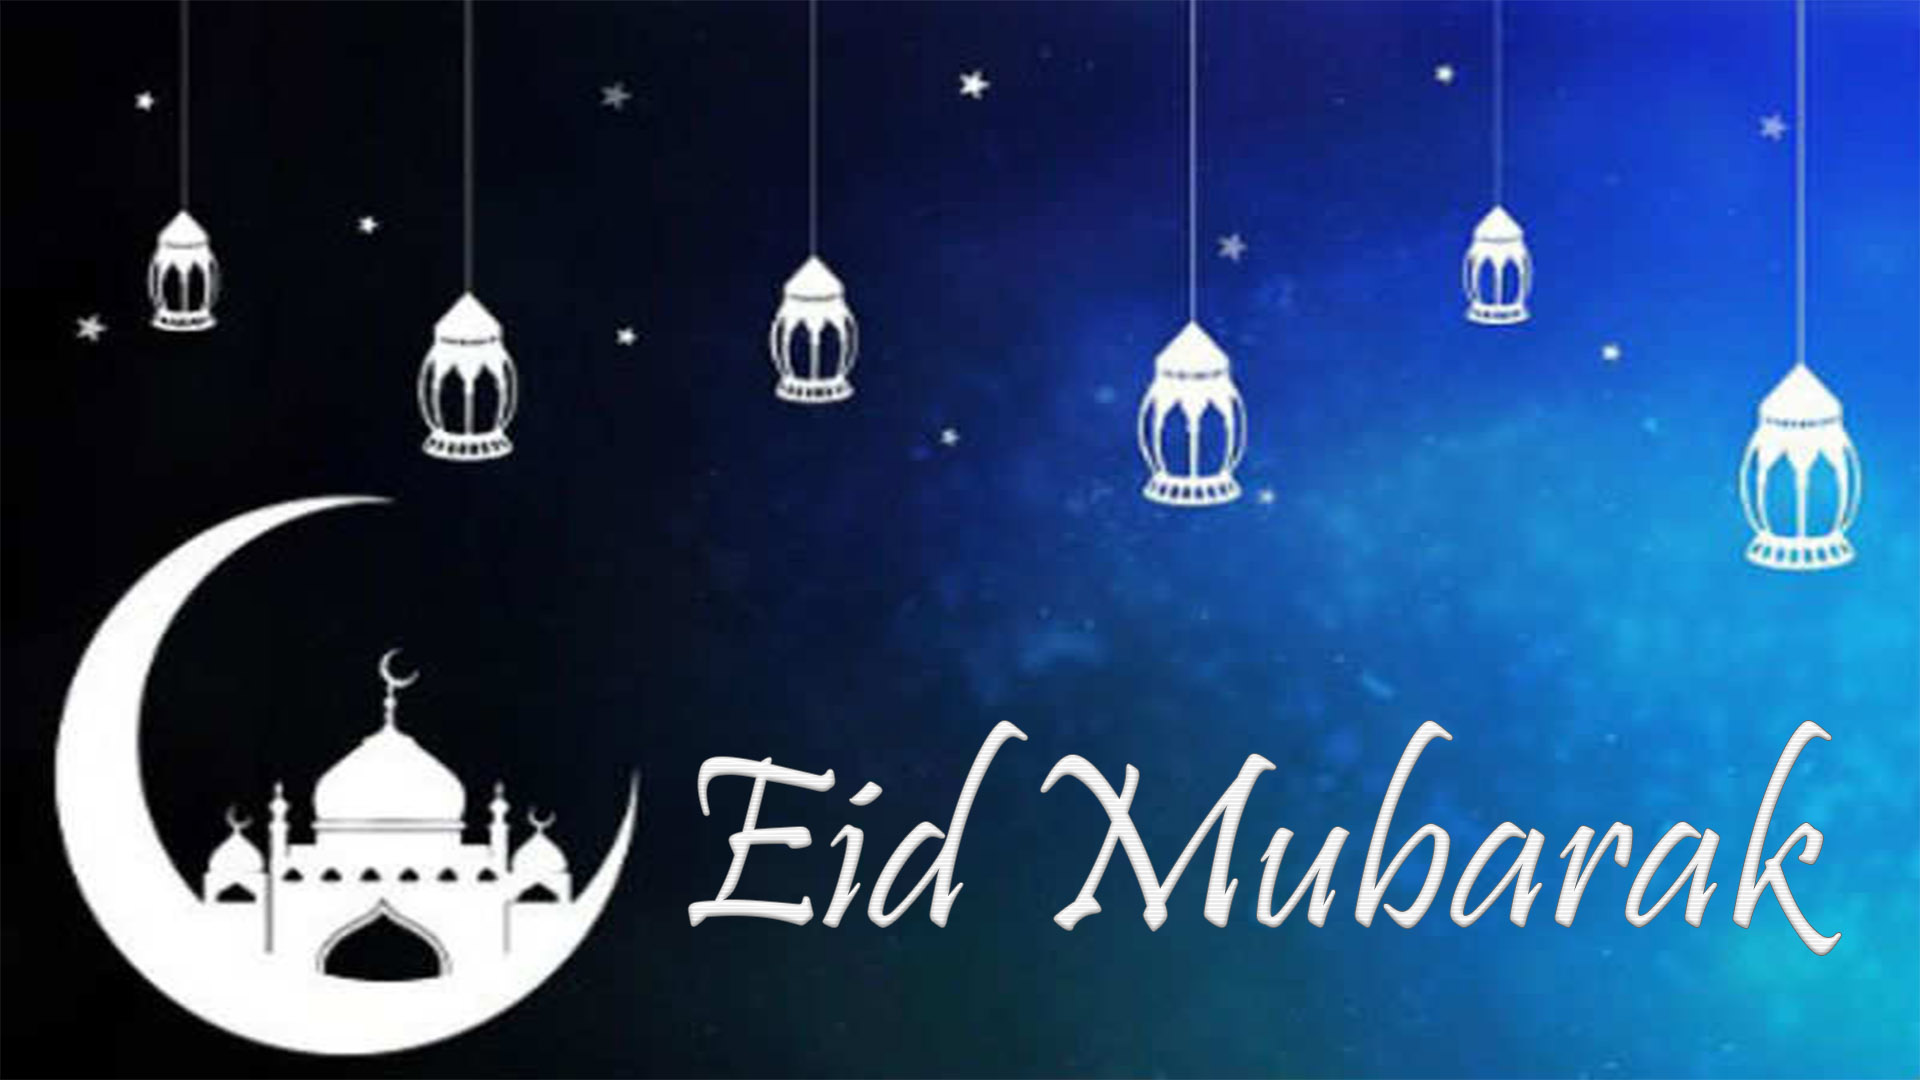 eid mubarak whatsapp status images